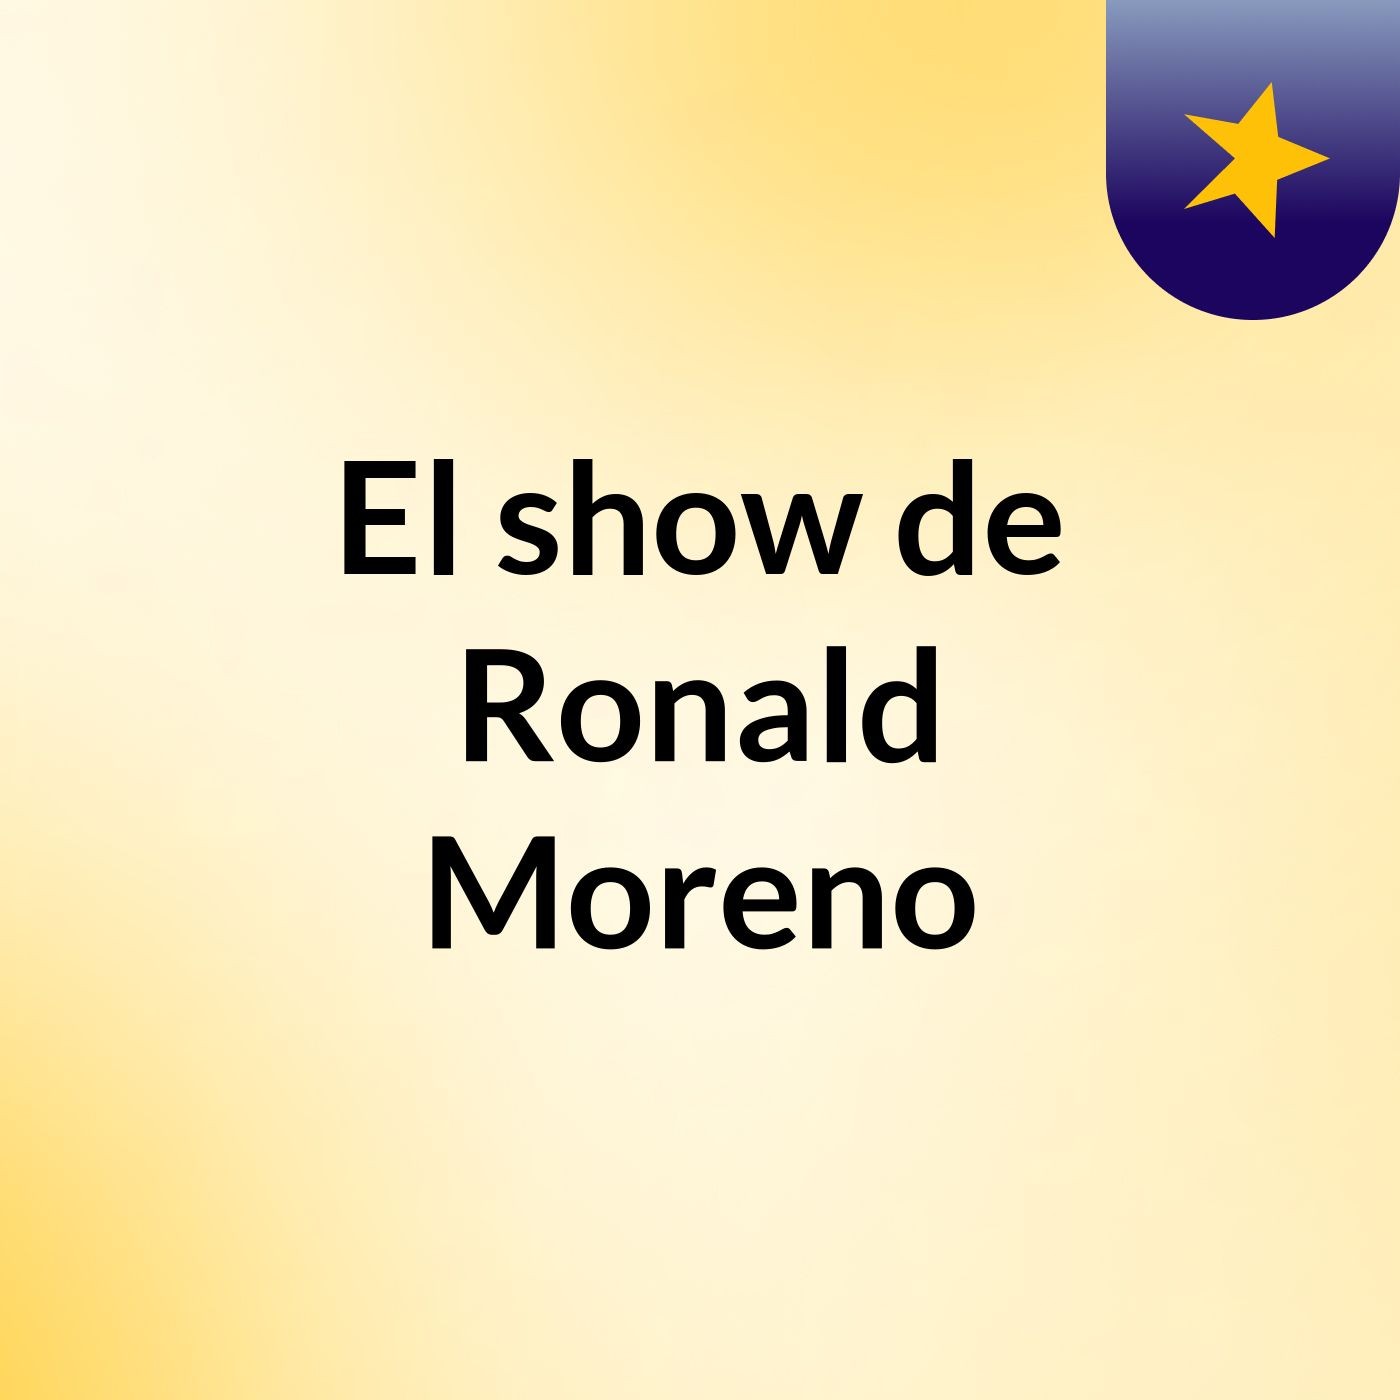 El show de Ronald Moreno